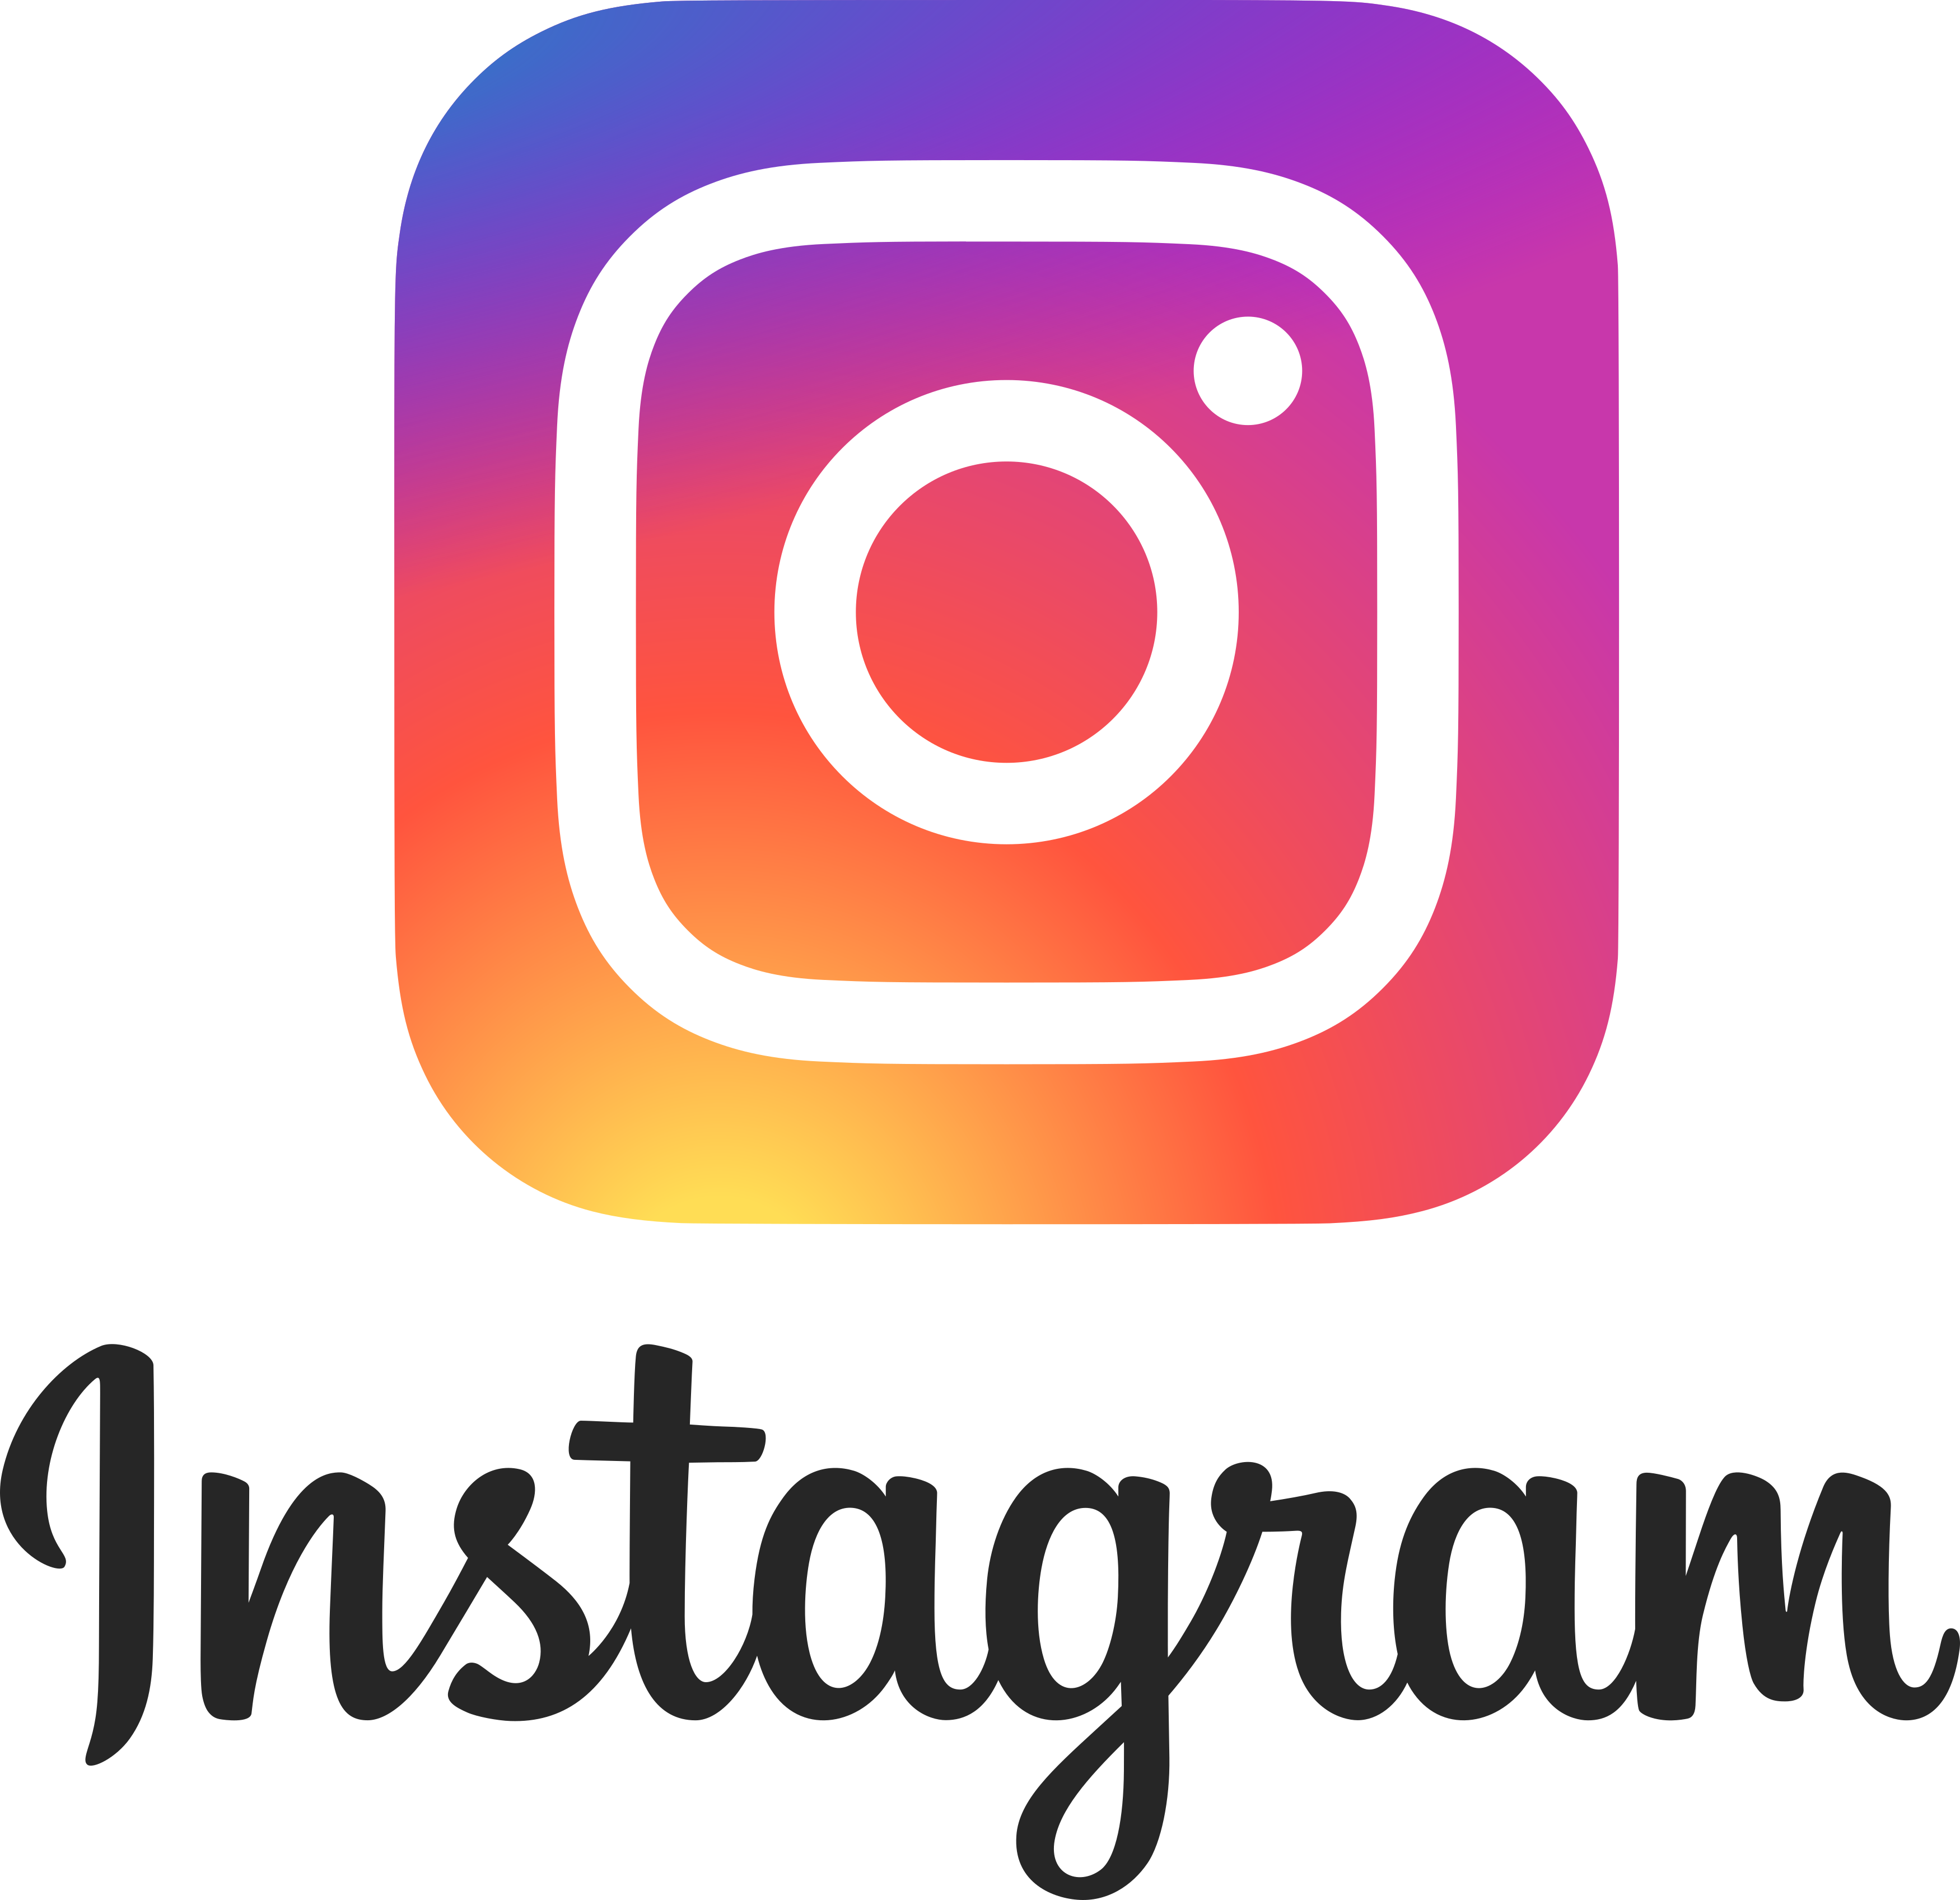 logodownload.org/wp-content/uploads/2017/04/instagram-logo-2.png